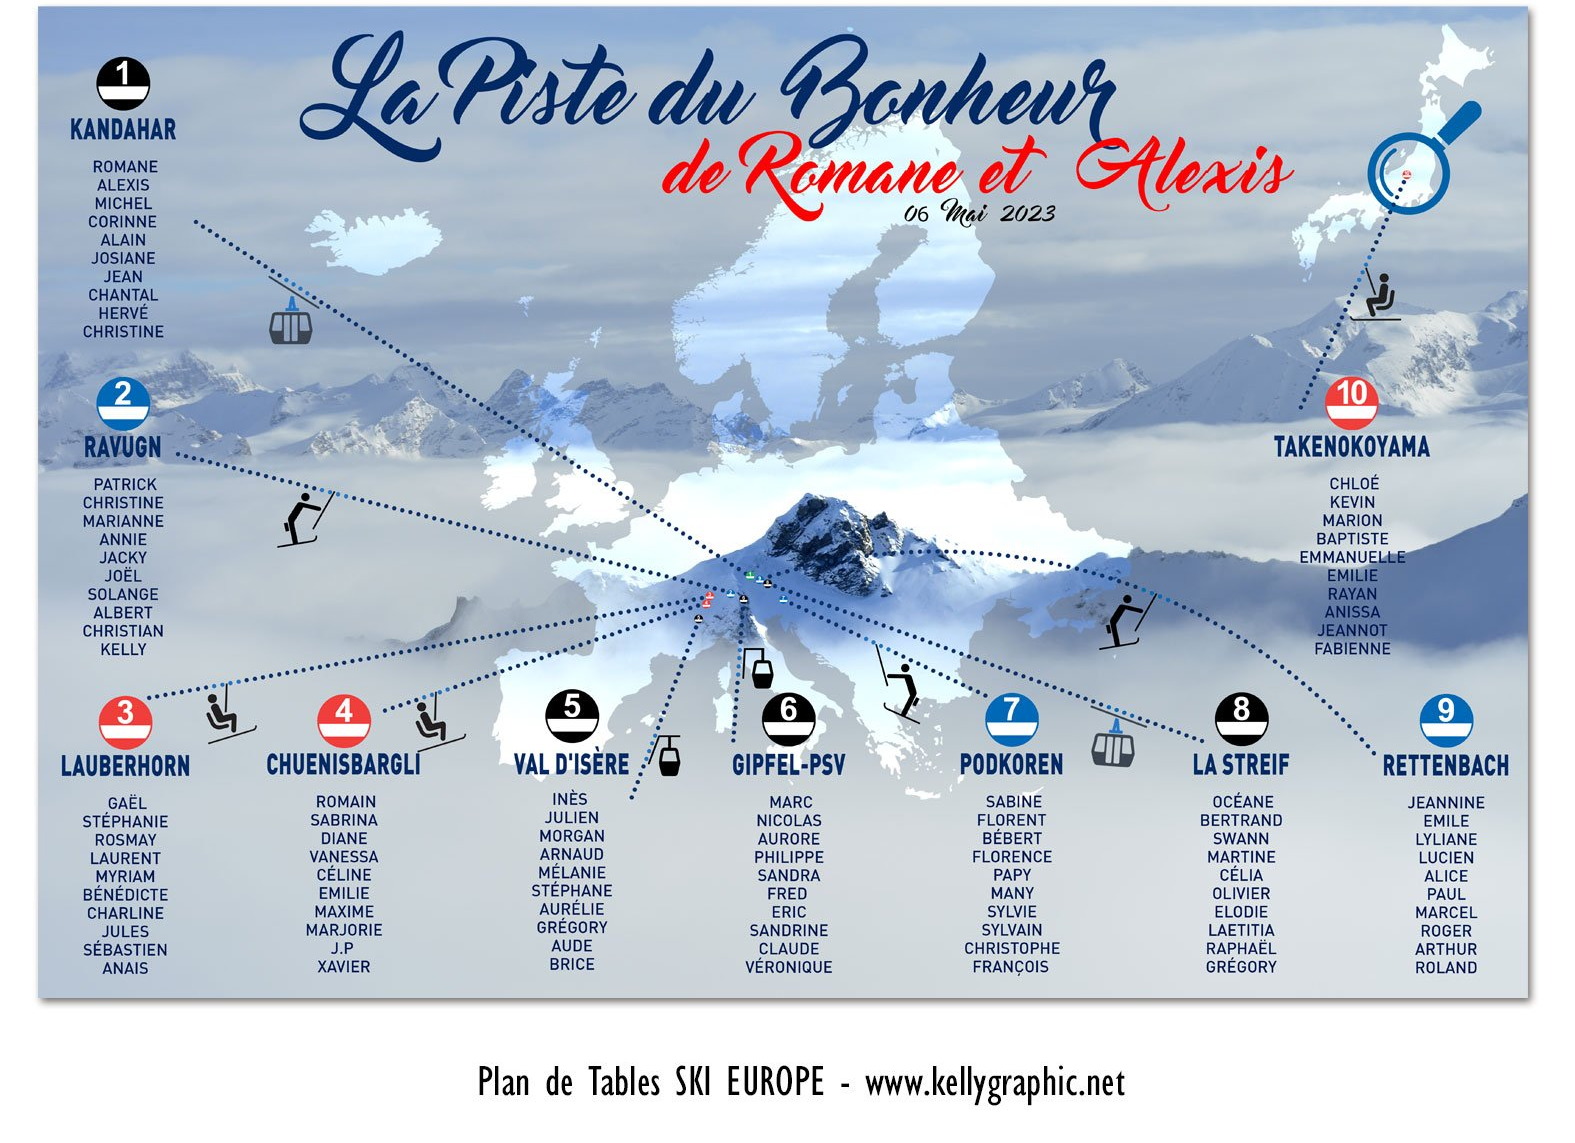 Plan de Table Mariage, voyage ski Europe